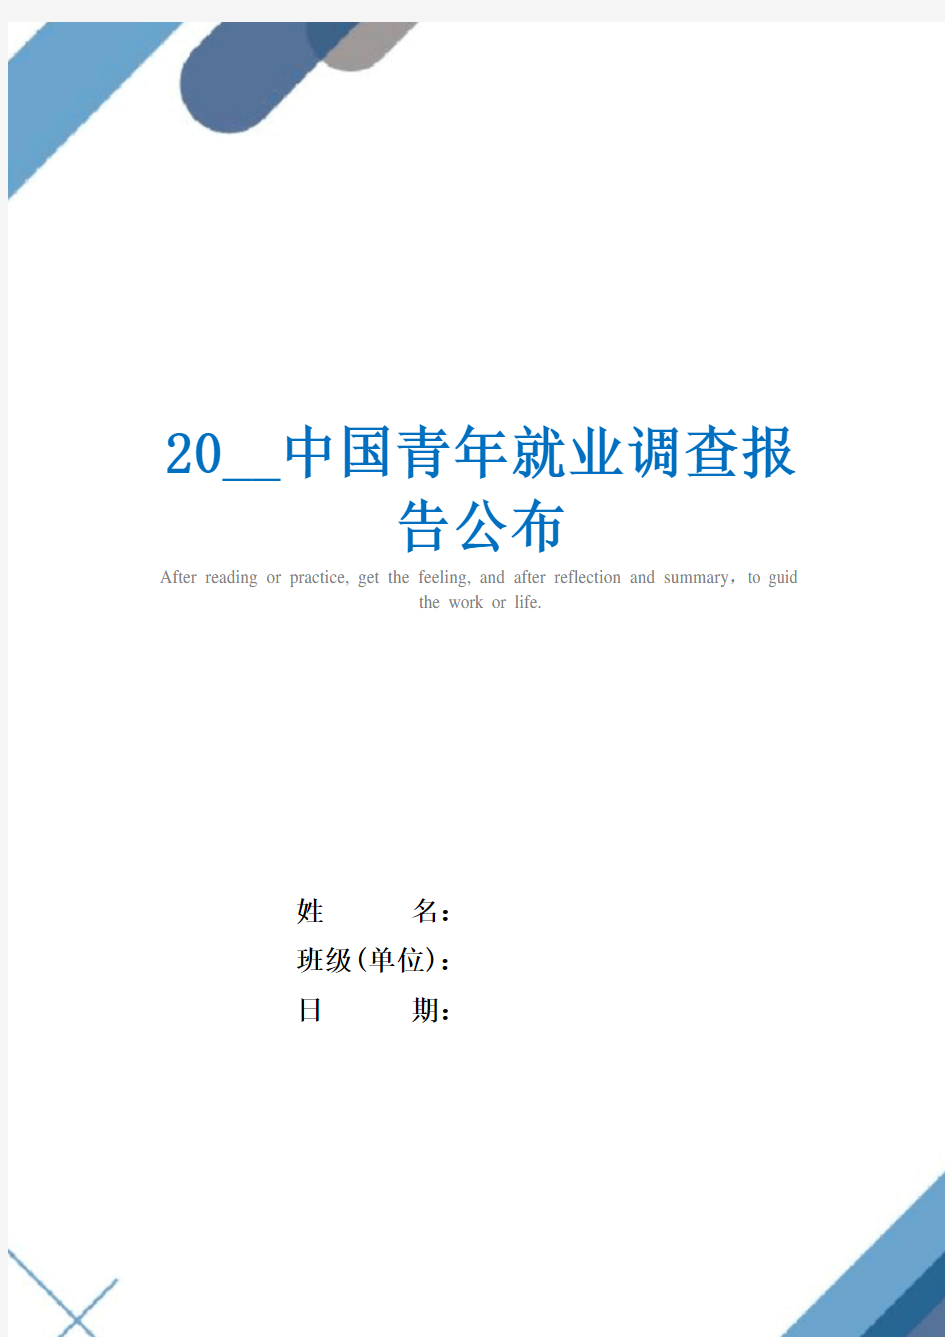 20__中国青年就业调查报告公布